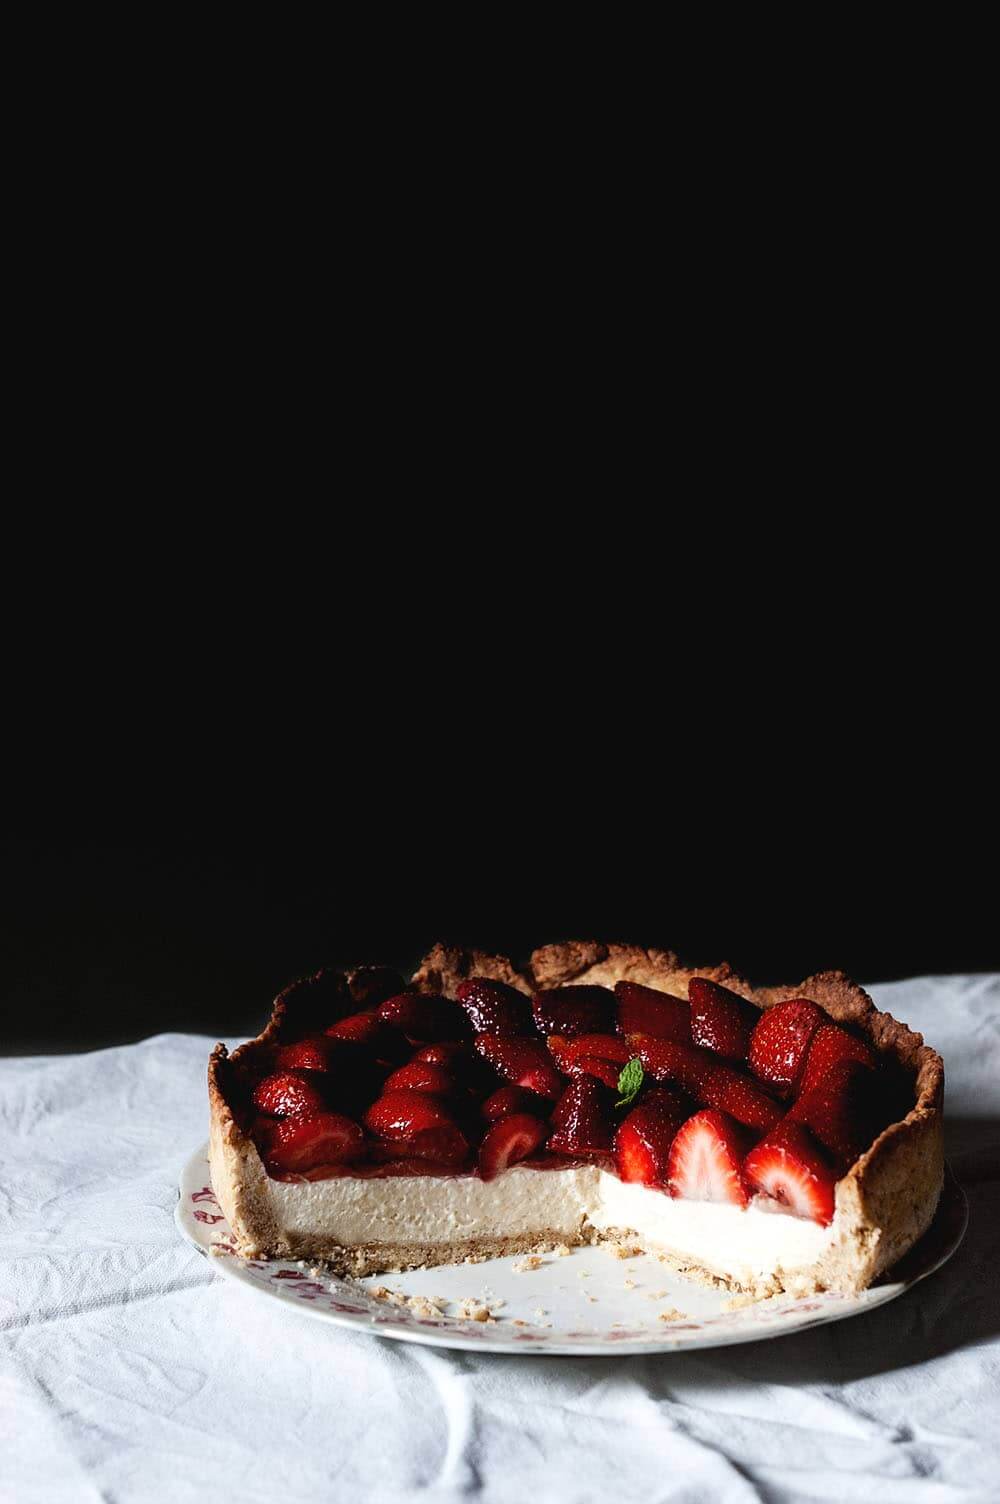 En una mesa cubierta con un mantel blanco está la tarta de fresas con crema y gelatina ya cortada.